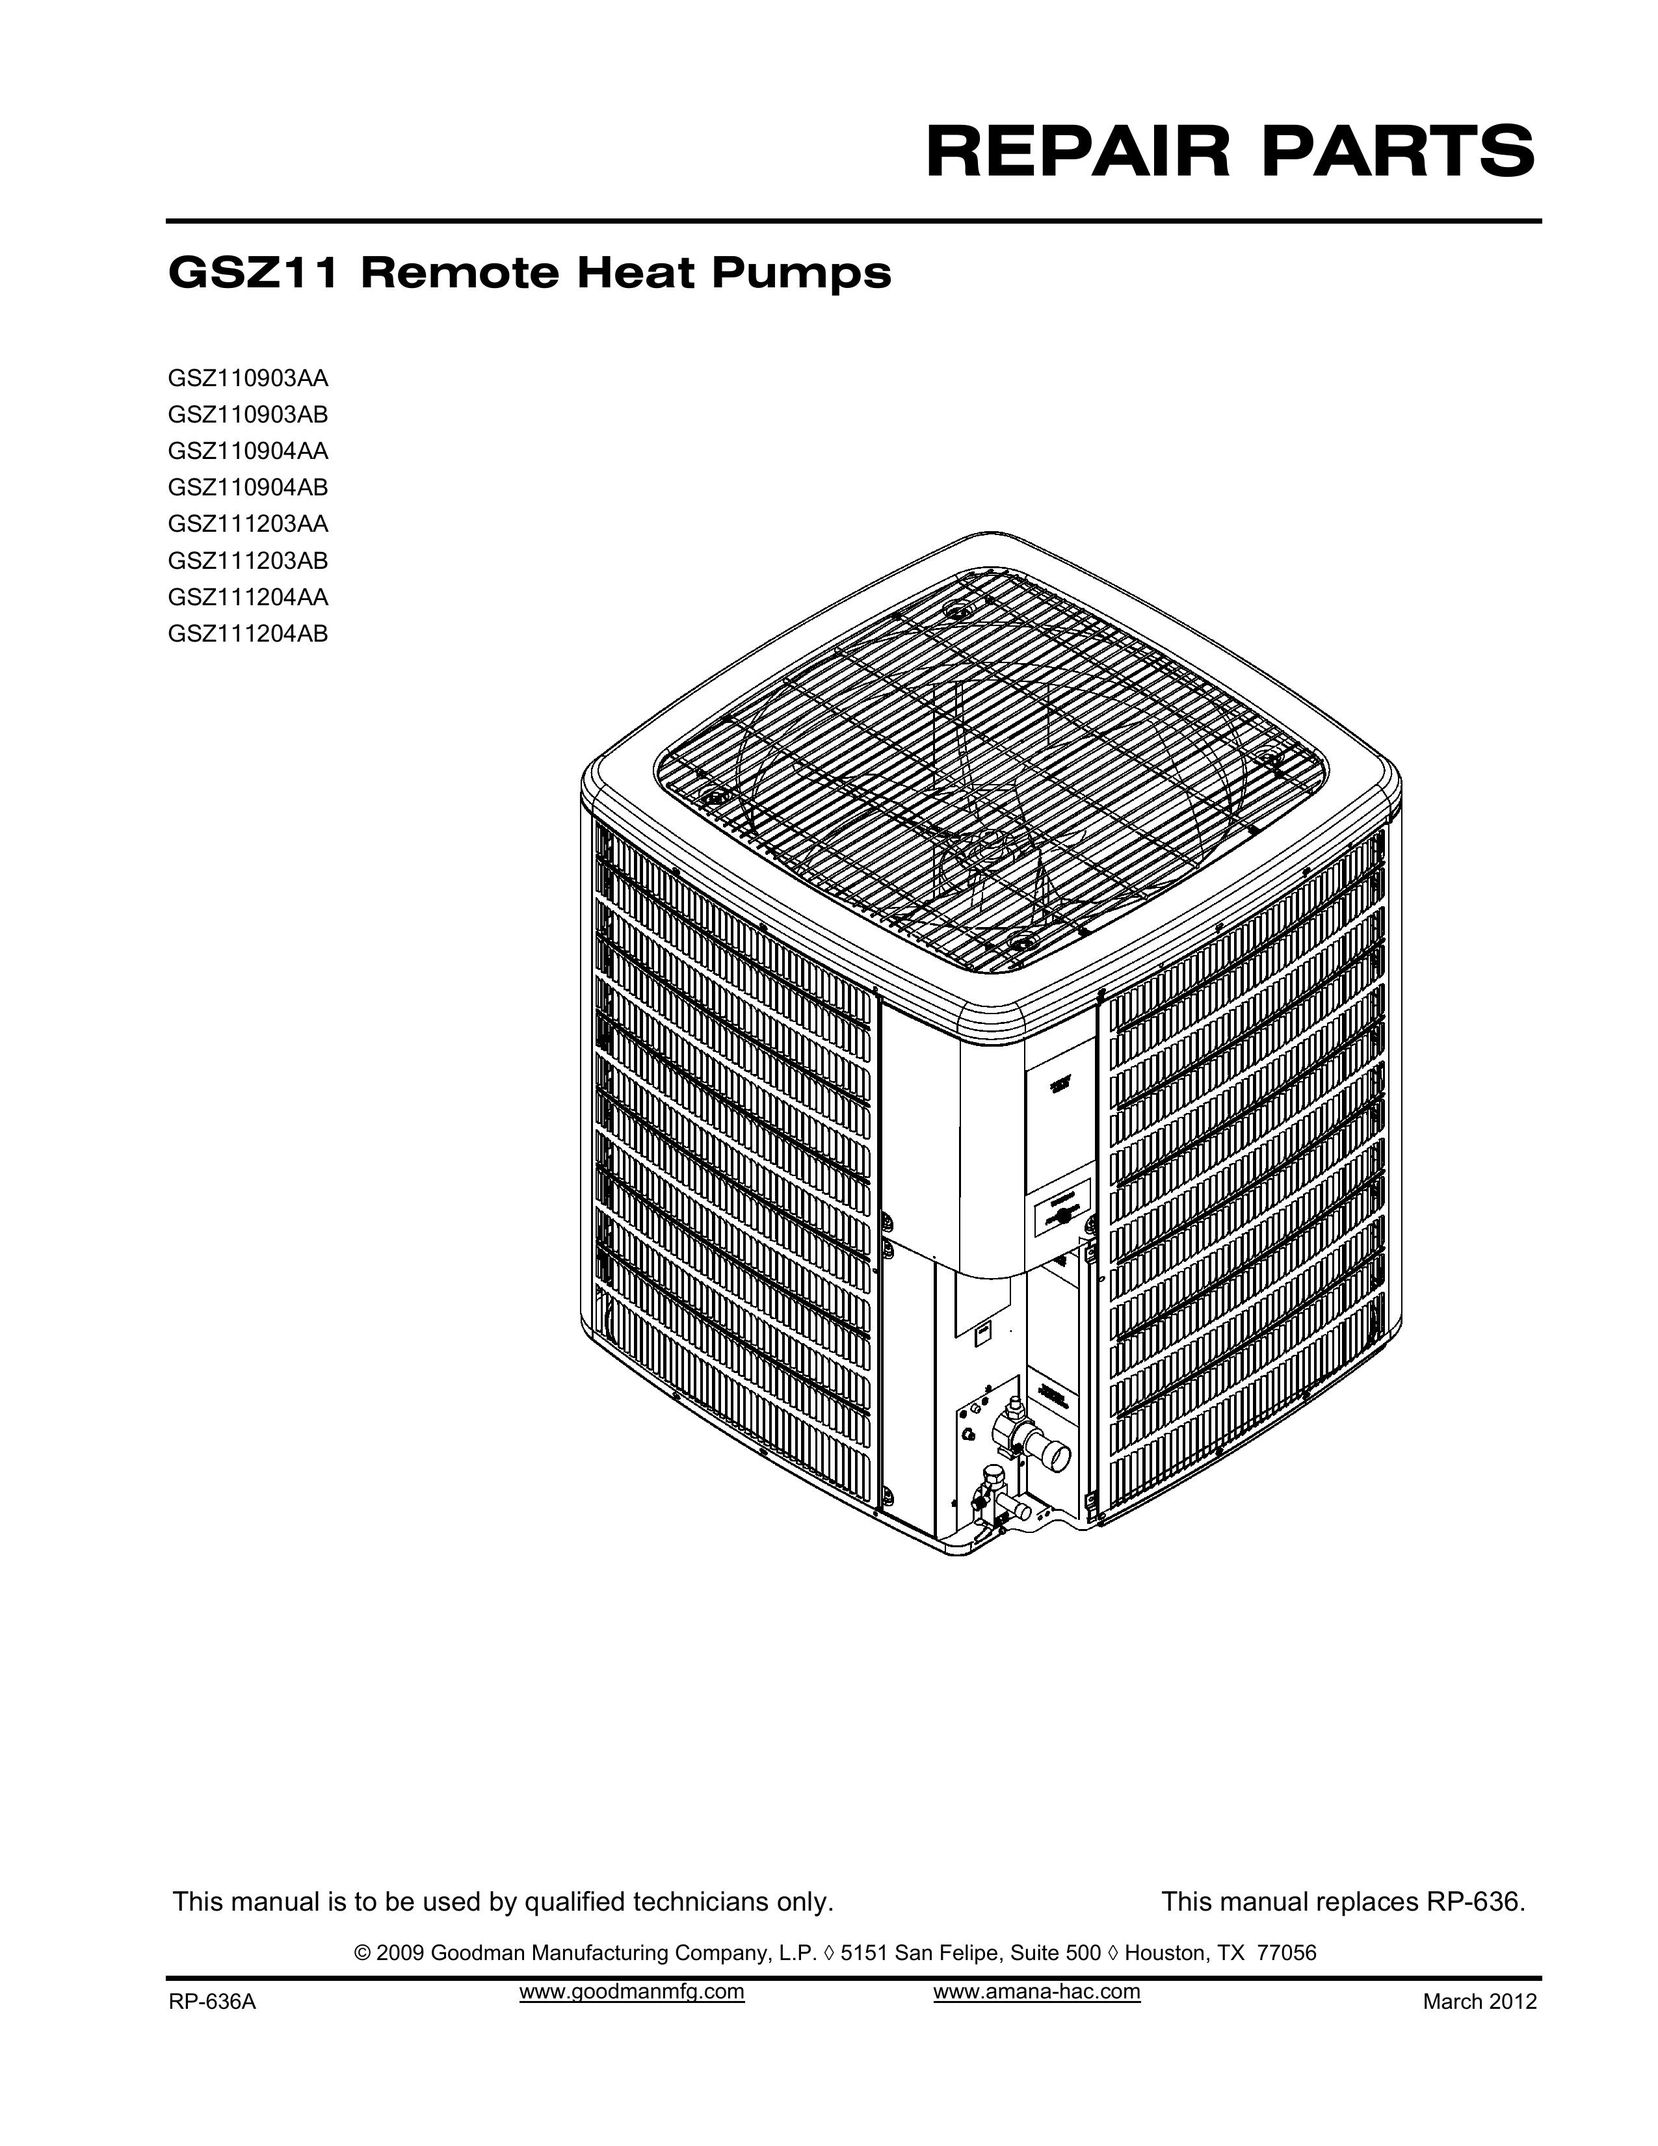 Goodman Mfg gsz11 remote heat pumps Heat Pump User Manual